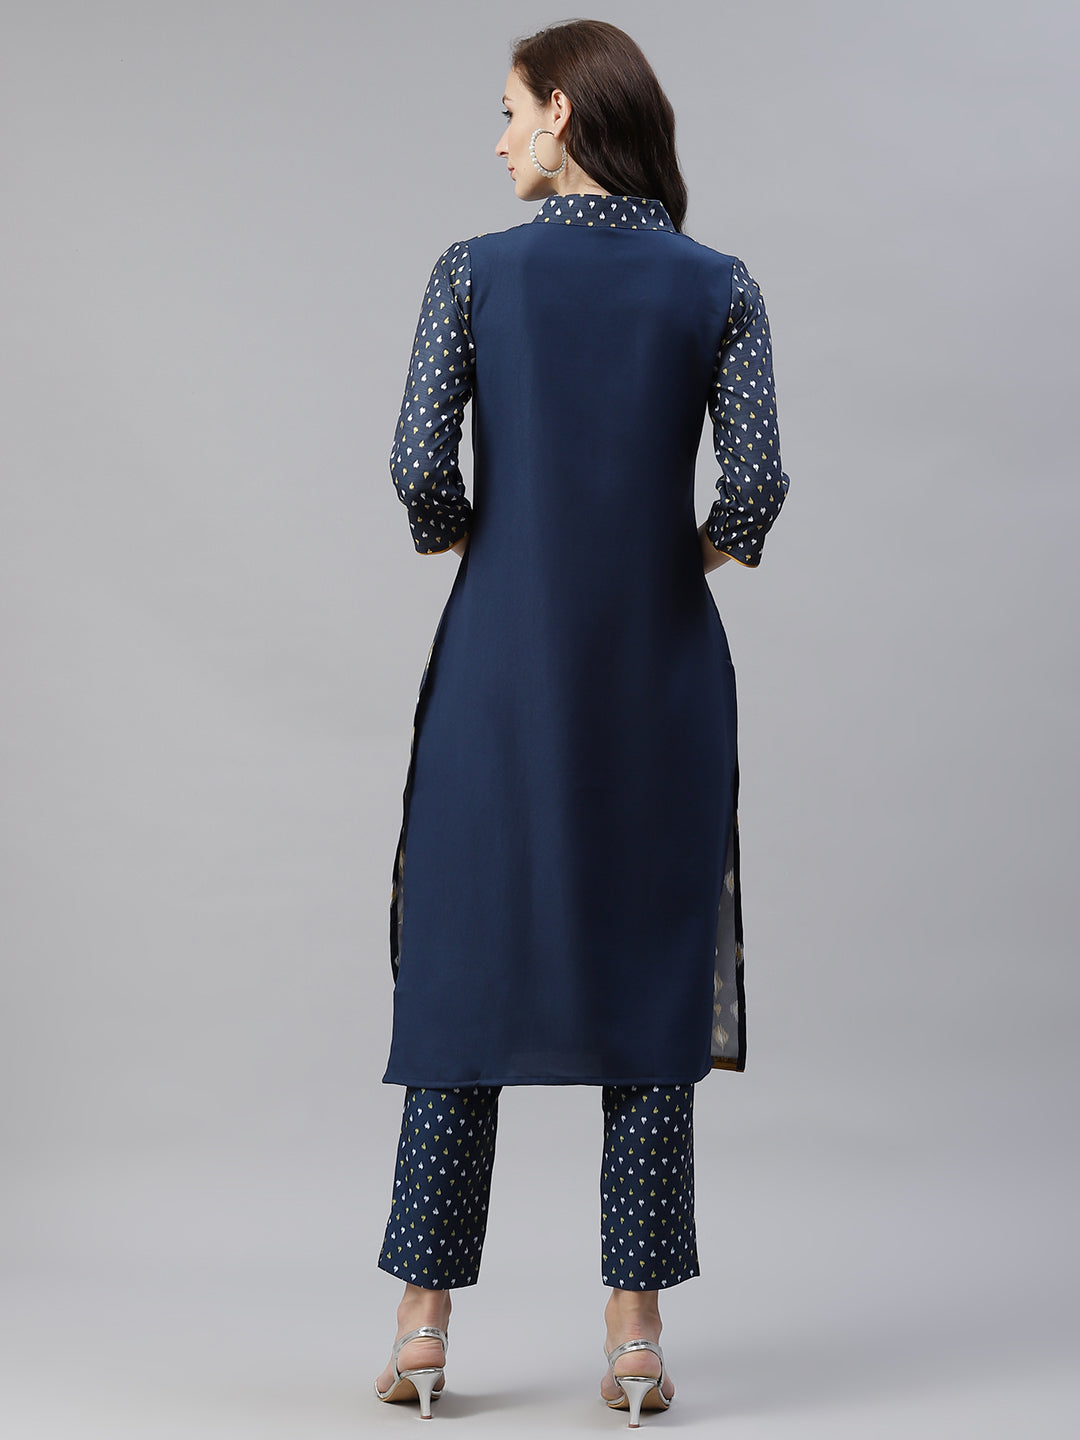 Women's Navy Blue Color Digital Printed Straight Kurta And Pant Set - Ziyaa